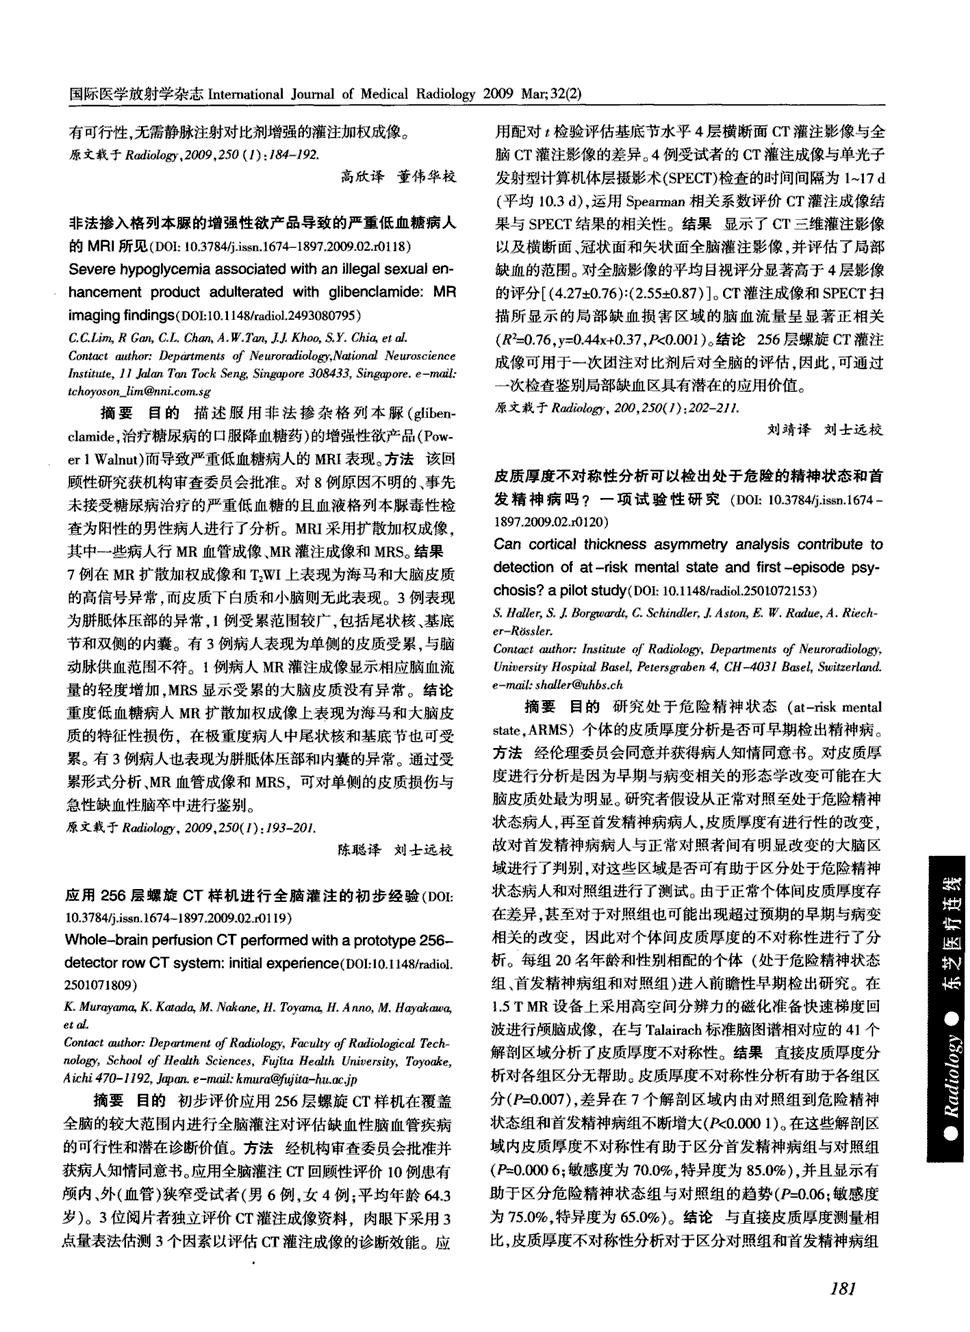 《国际医学放射学杂志》2009年第2期 181